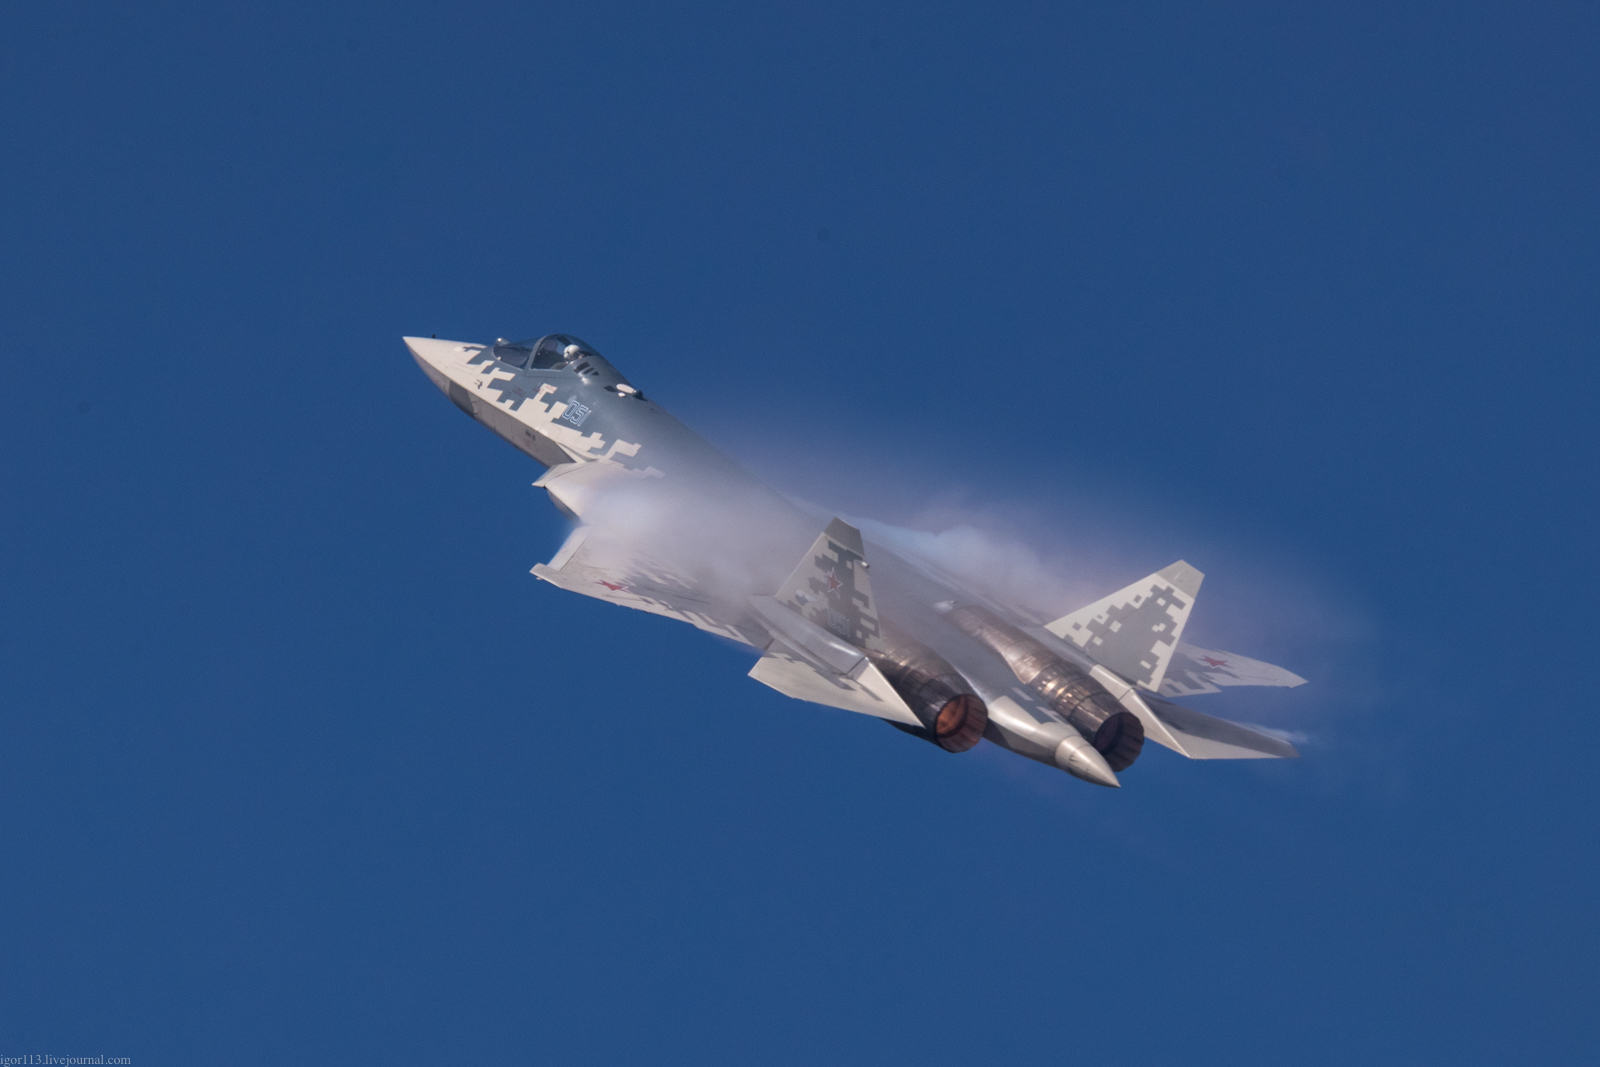 МАКС-2019 010919 ч5-3: демонстрационный полет Су-57.